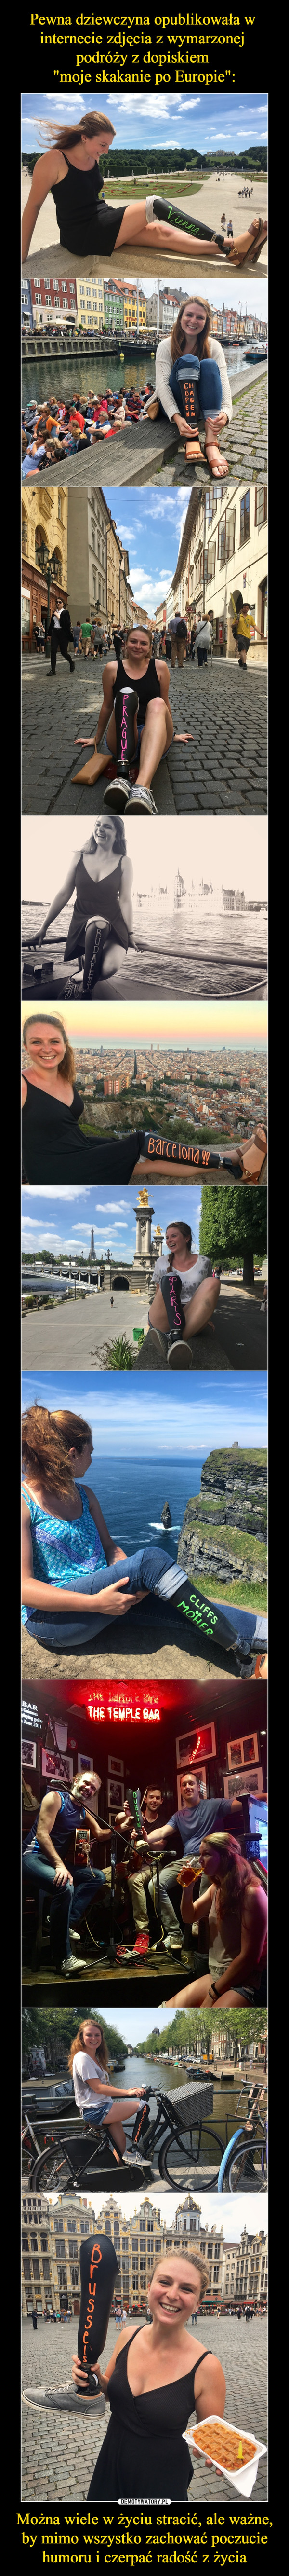 Pewna dziewczyna opublikowała w 
internecie zdjęcia z wymarzonej 
podróży z dopiskiem 
"moje skakanie po Europie": Można wiele w życiu stracić, ale ważne, by mimo wszystko zachować poczucie humoru i czerpać radość z życia